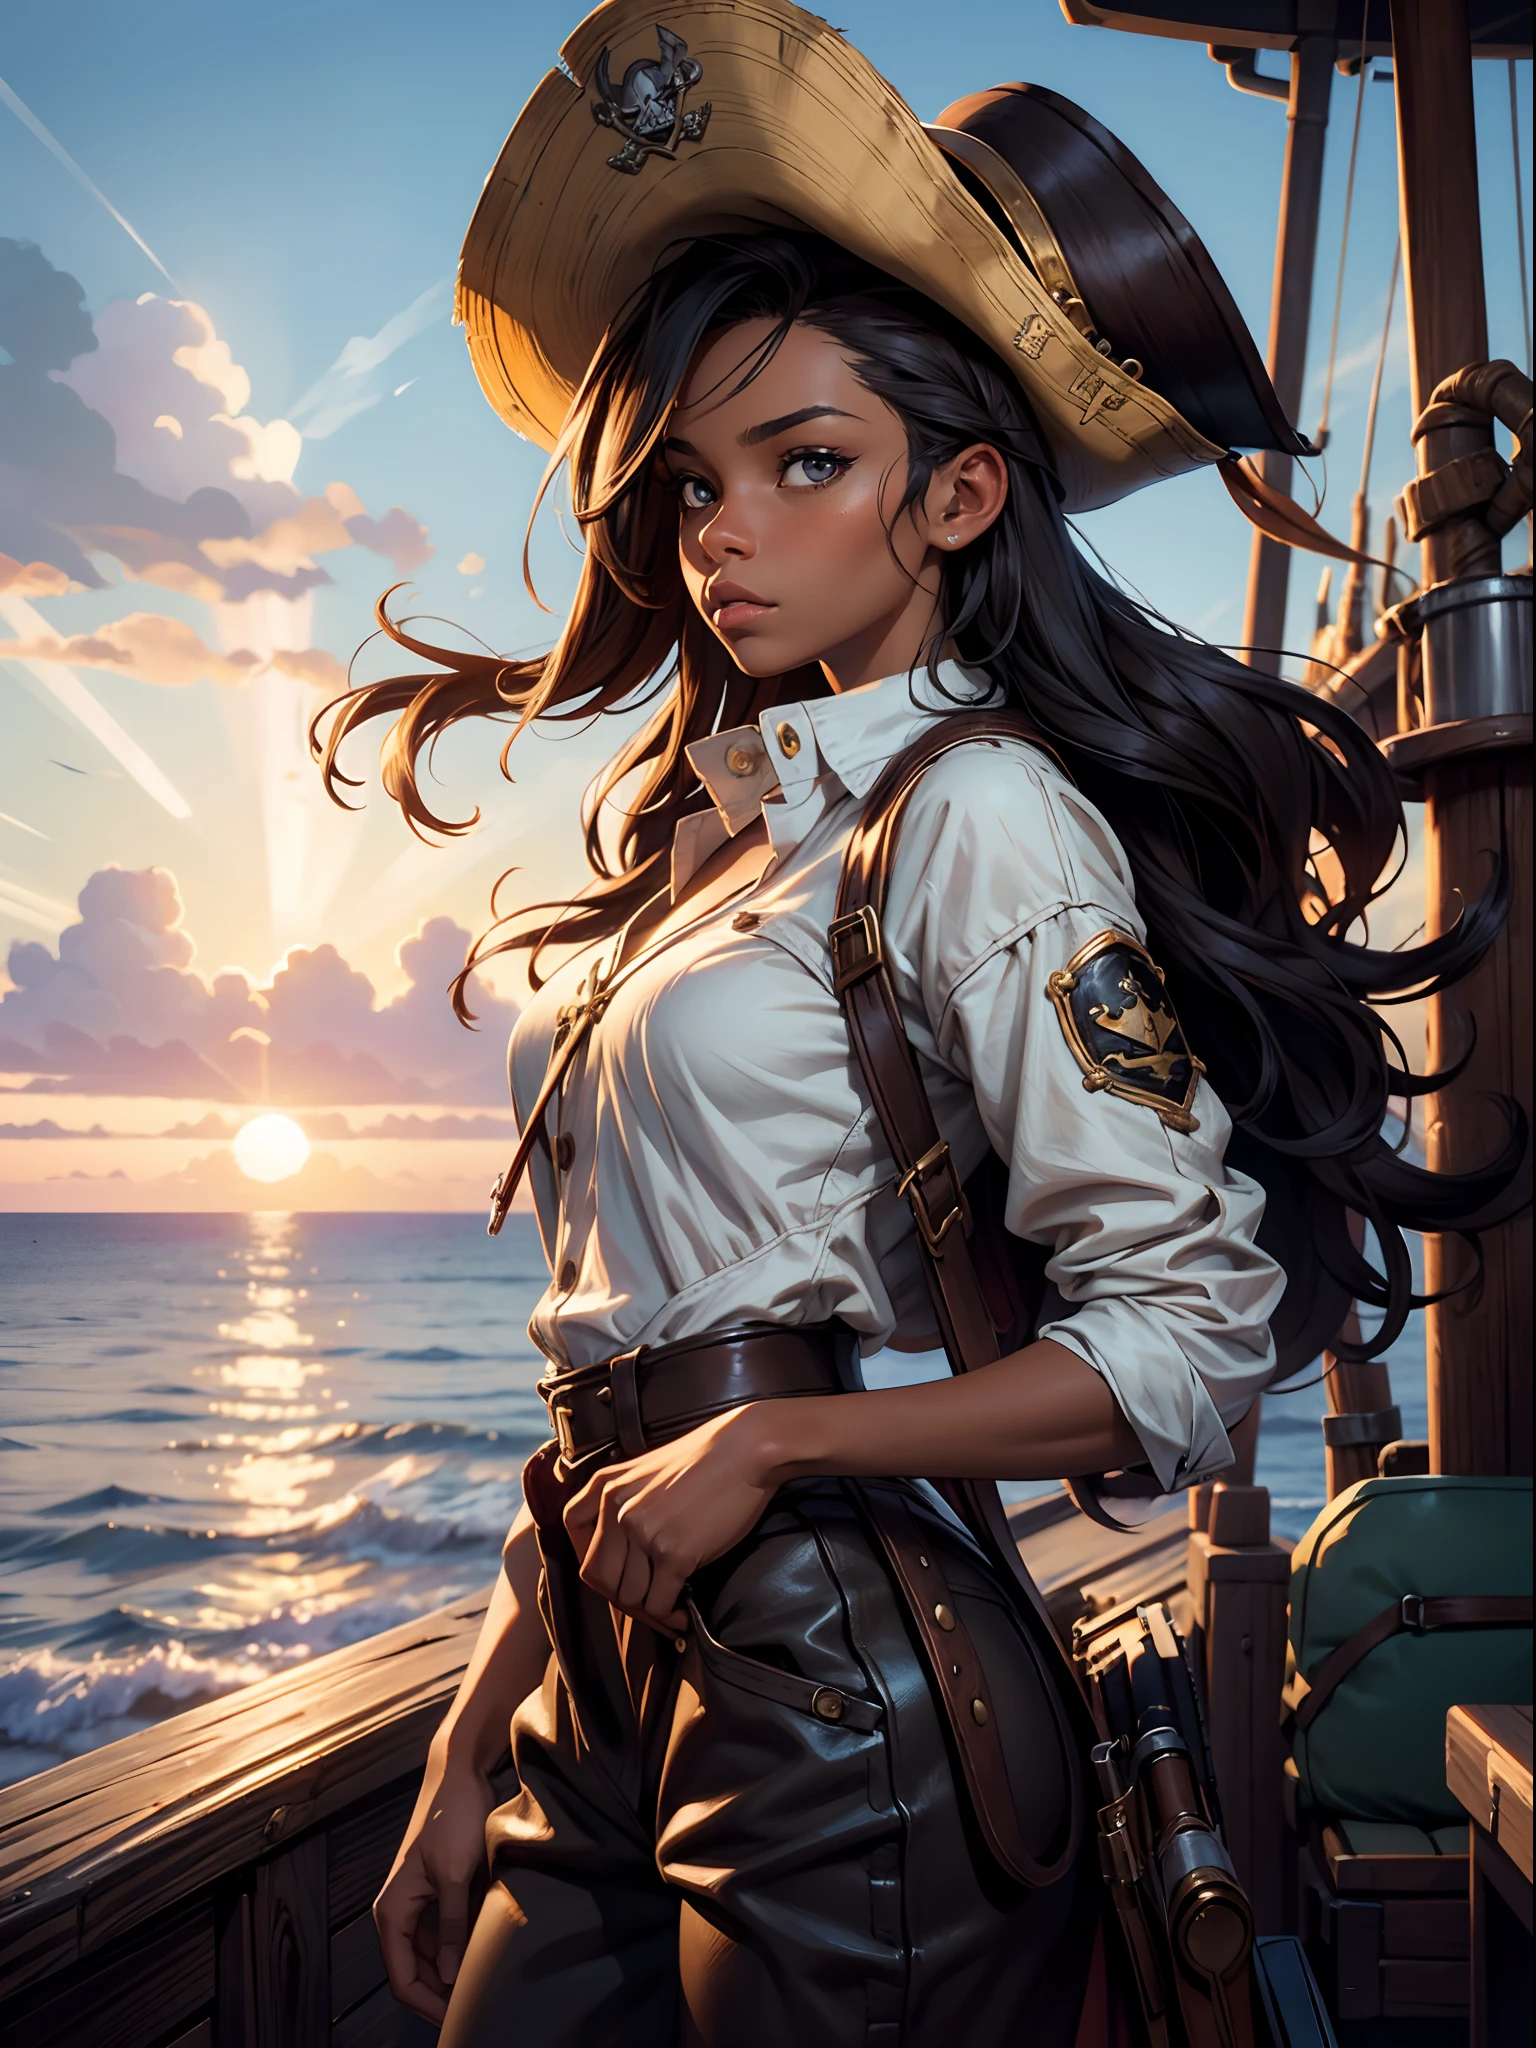 (​шедевр), (высшее качество), закат, естественное освещение, ,(реалистичный:1.5), 1 девушка, длинные коричневые волосы, Стройный, смотрю на сайт, пиратский капитан, имеет, море, на пиратском корабле, Пистолет, шедевр, подробный, зрелый, яркие цвета, высокая насыщенность, Потрясающе красивая девушка карие глаза, черные волосы, панк волосы, загорелый, темная кожа, афроамериканец, Точные руки, уверенный взгляд、определенное выражение,, ясные глаза, Сияющие глаза,, сверхвысокое разрешение, Максимальное разрешение,  мягкая молния